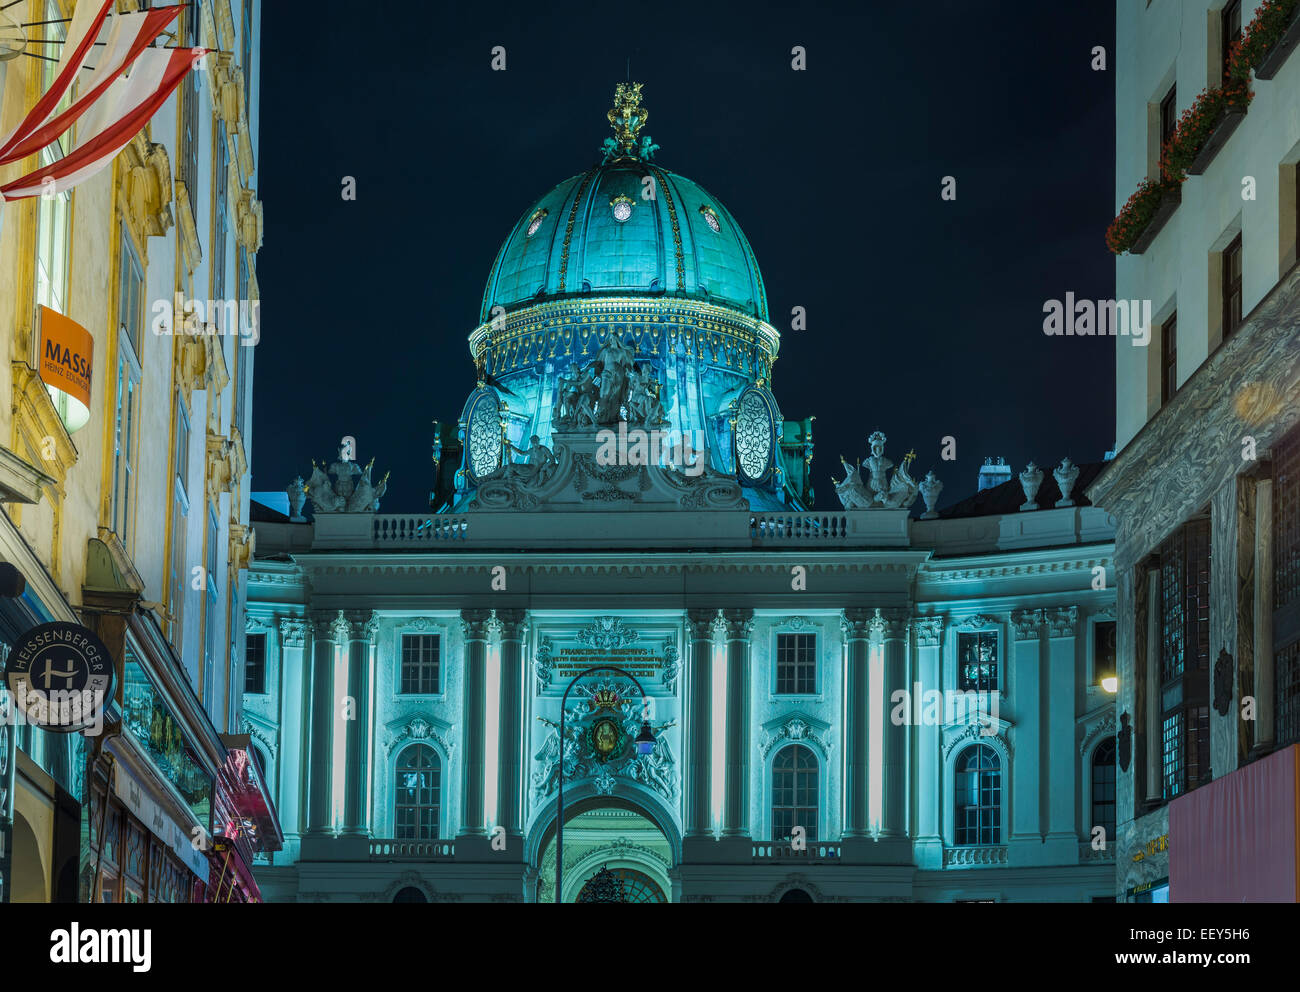 Hofburg Palace at night on Kohlmarkt in Vienna, Austria Stock Photo